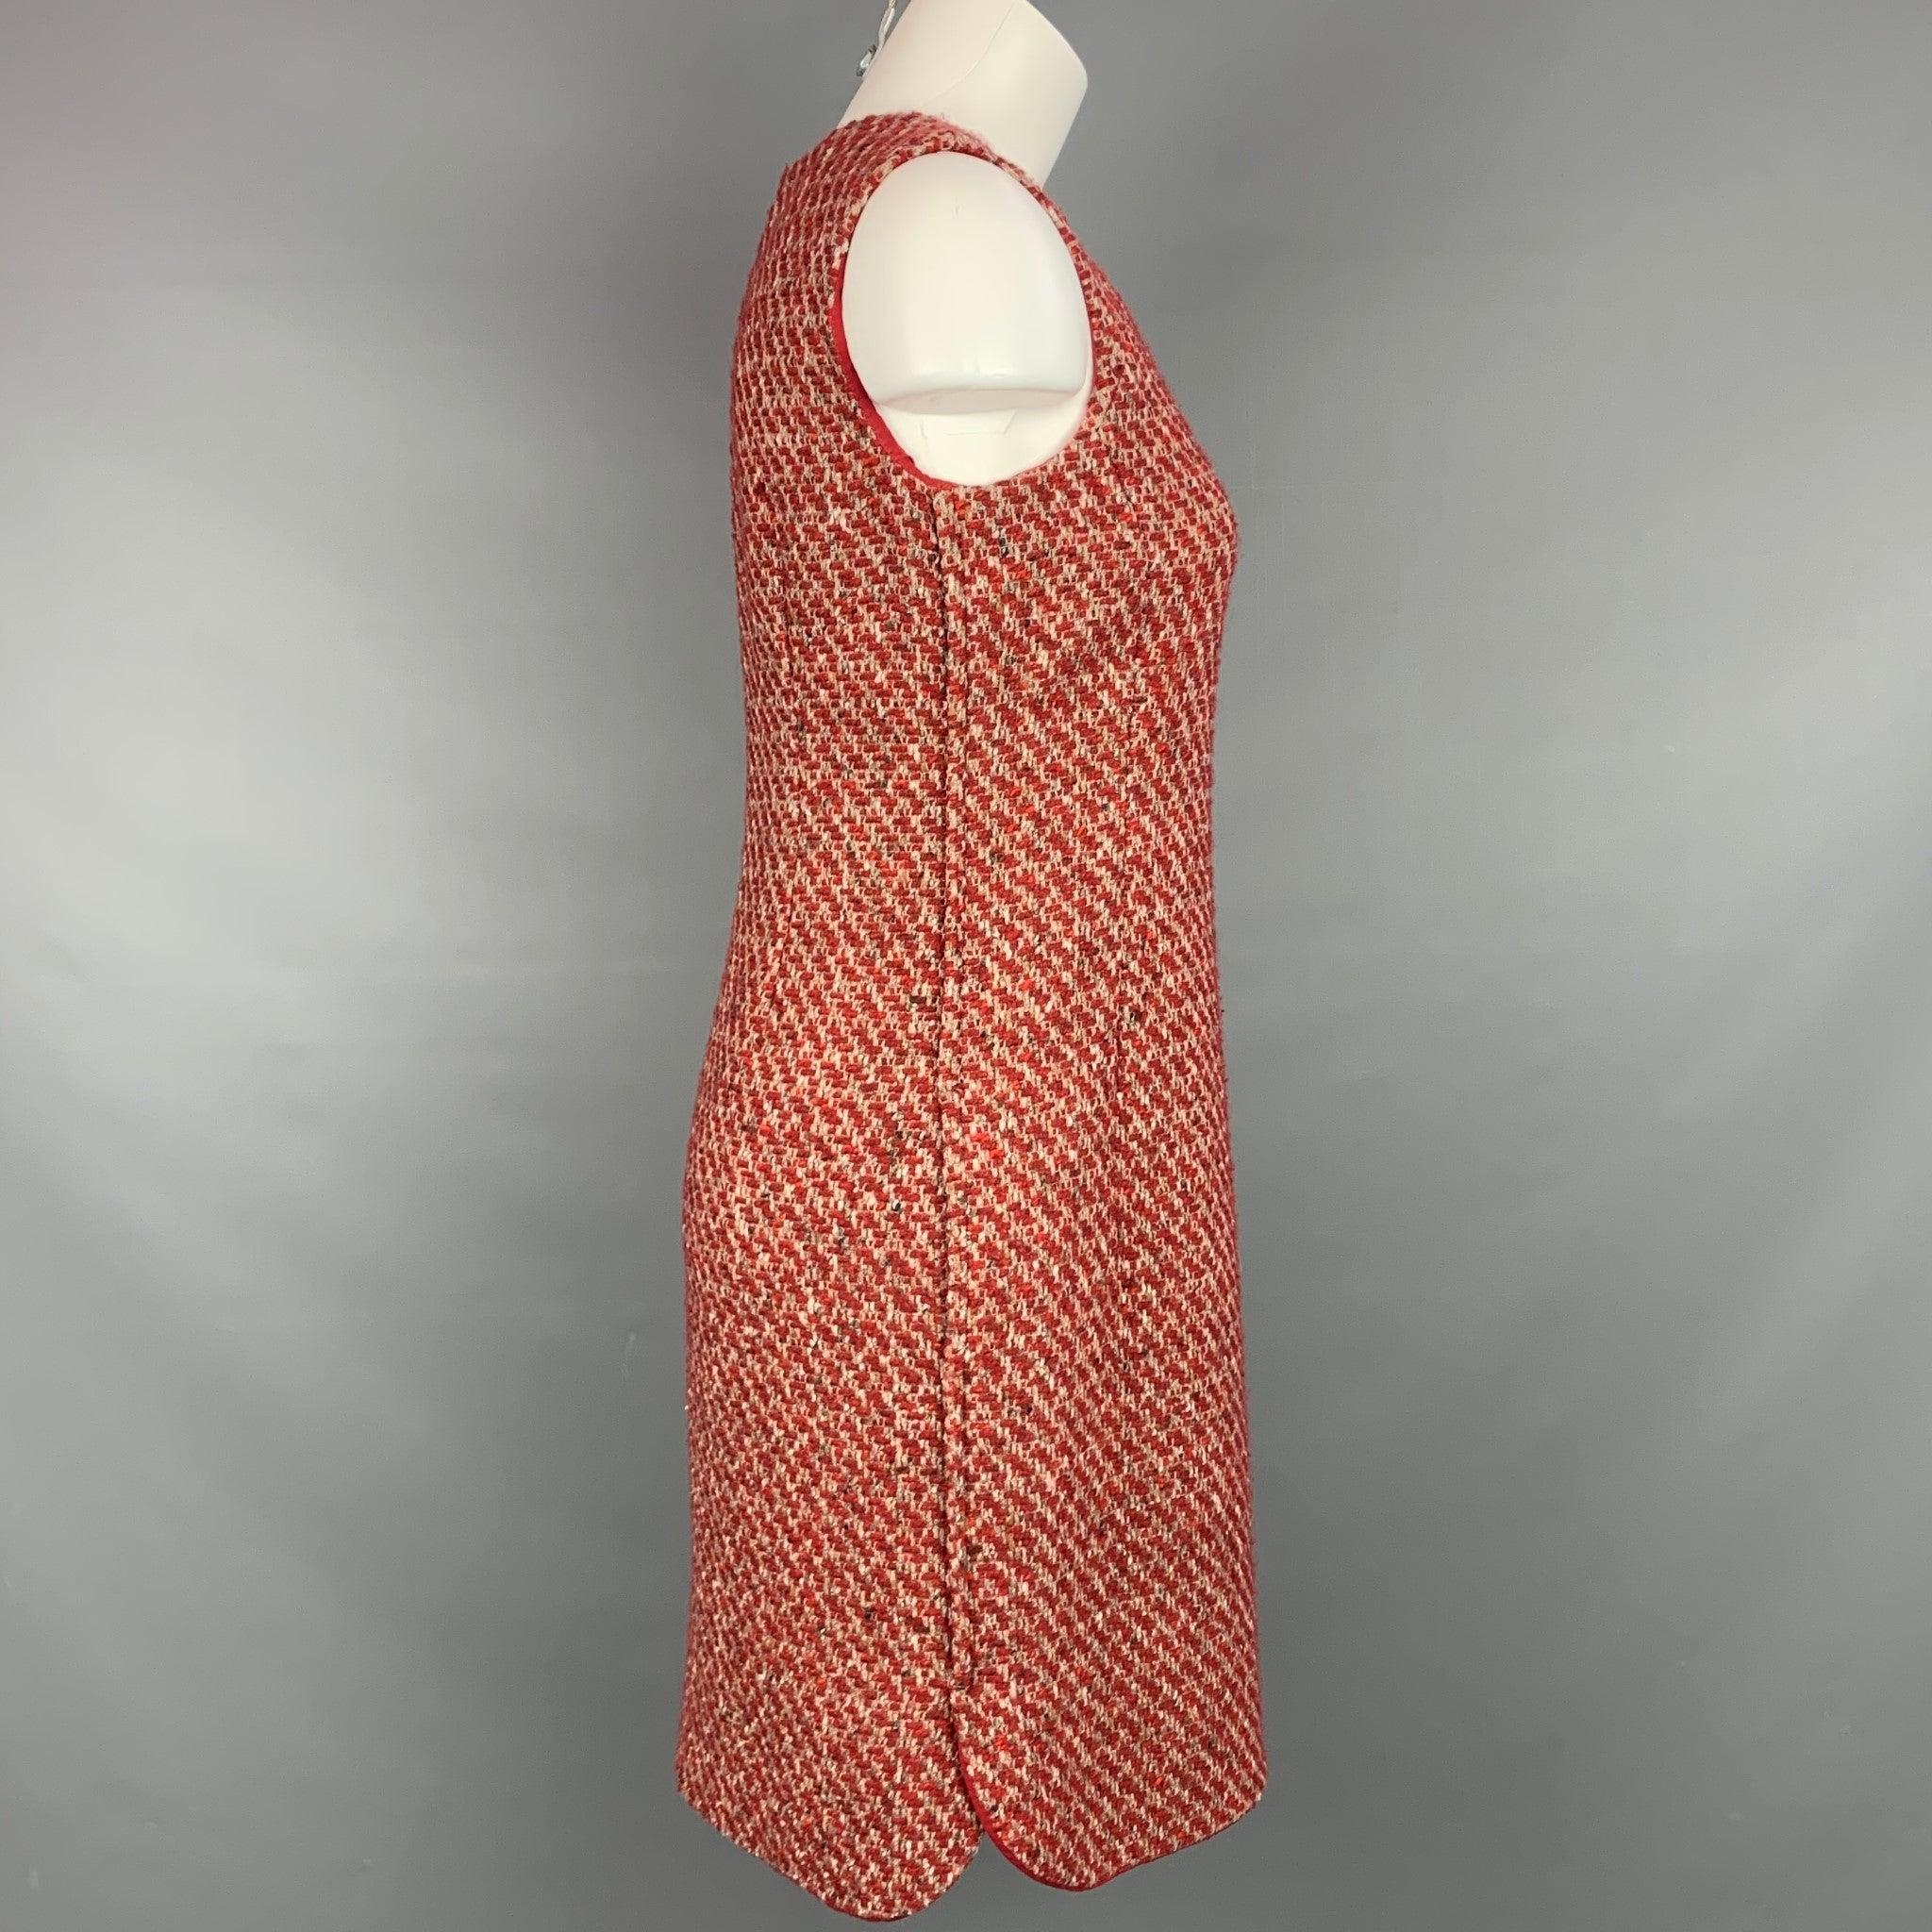 La robe LORO PIANA se compose d'un mélange de cachemire texturé bouclé rouge et taupe, d'une doublure complète, d'un style décontracté, de poches fendues et d'une fermeture à glissière à l'arrière. Fabriqué en Italie.
Etat d'occasion. 

Marqué :  